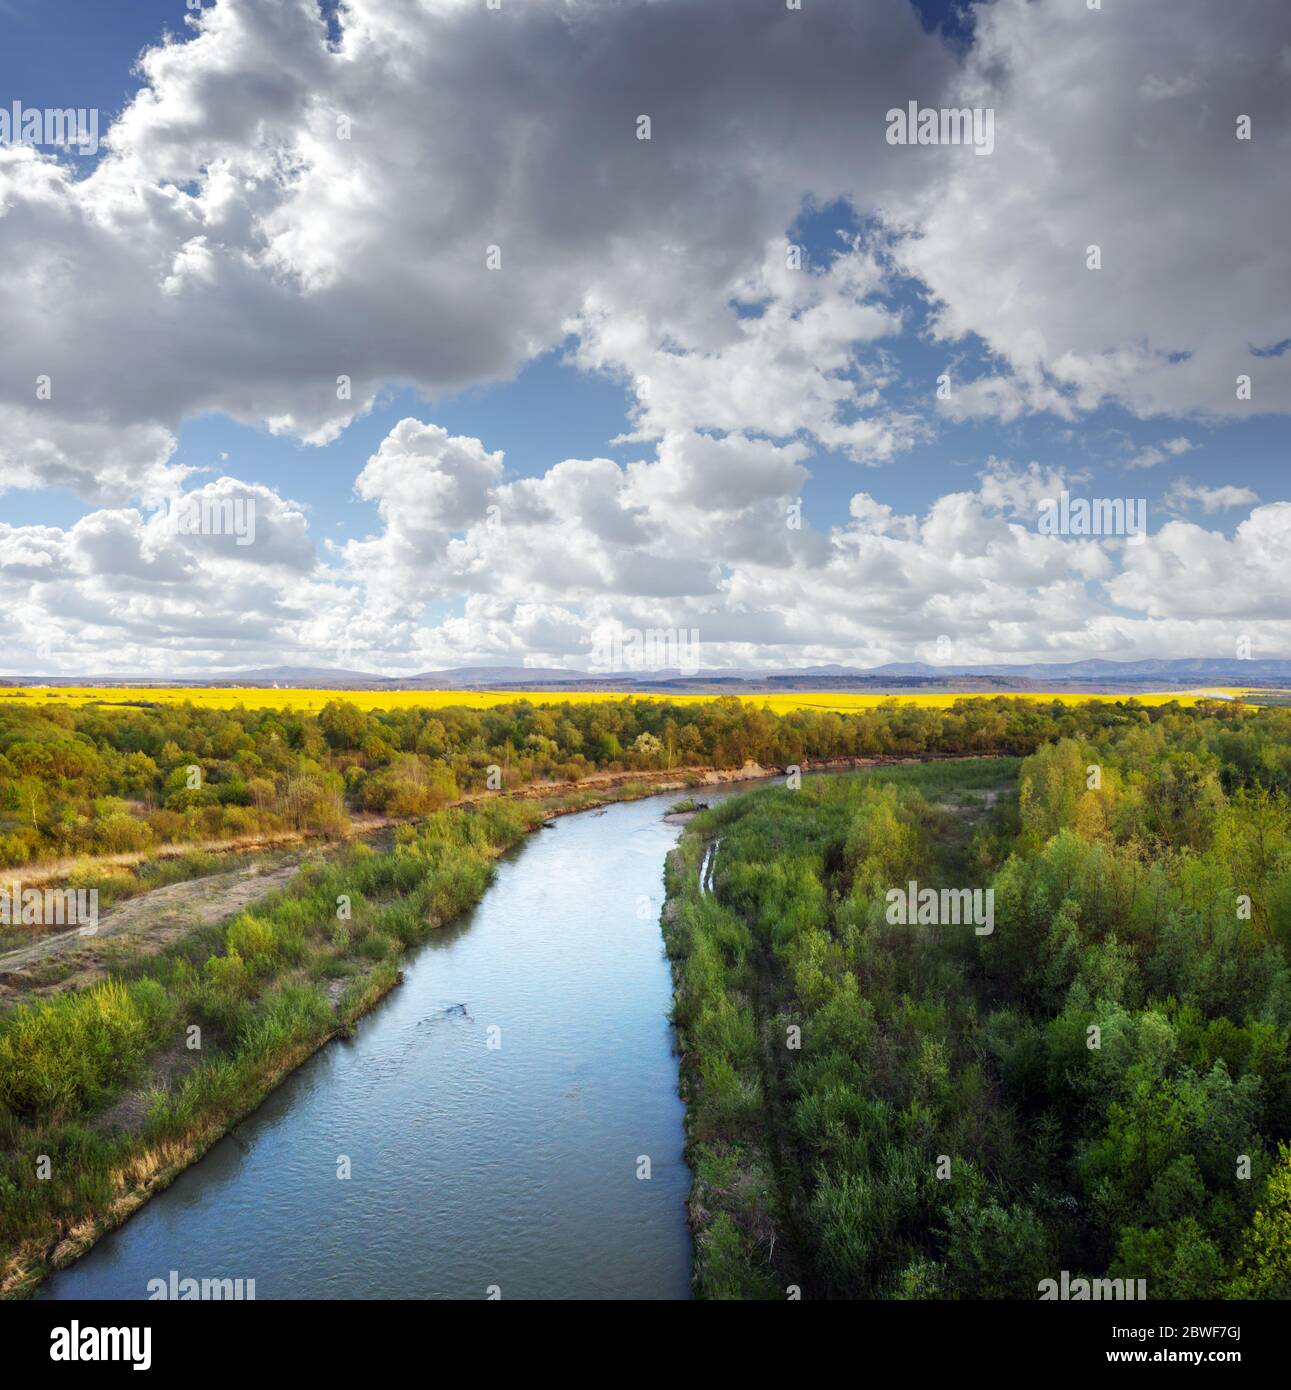 Envolez-vous à travers la majestueuse rivière Dnister, la forêt verte luxuriante et les champs de colza jaune en pleine floraison au coucher du soleil. Ukraine, Europe. Photographie de paysage Banque D'Images